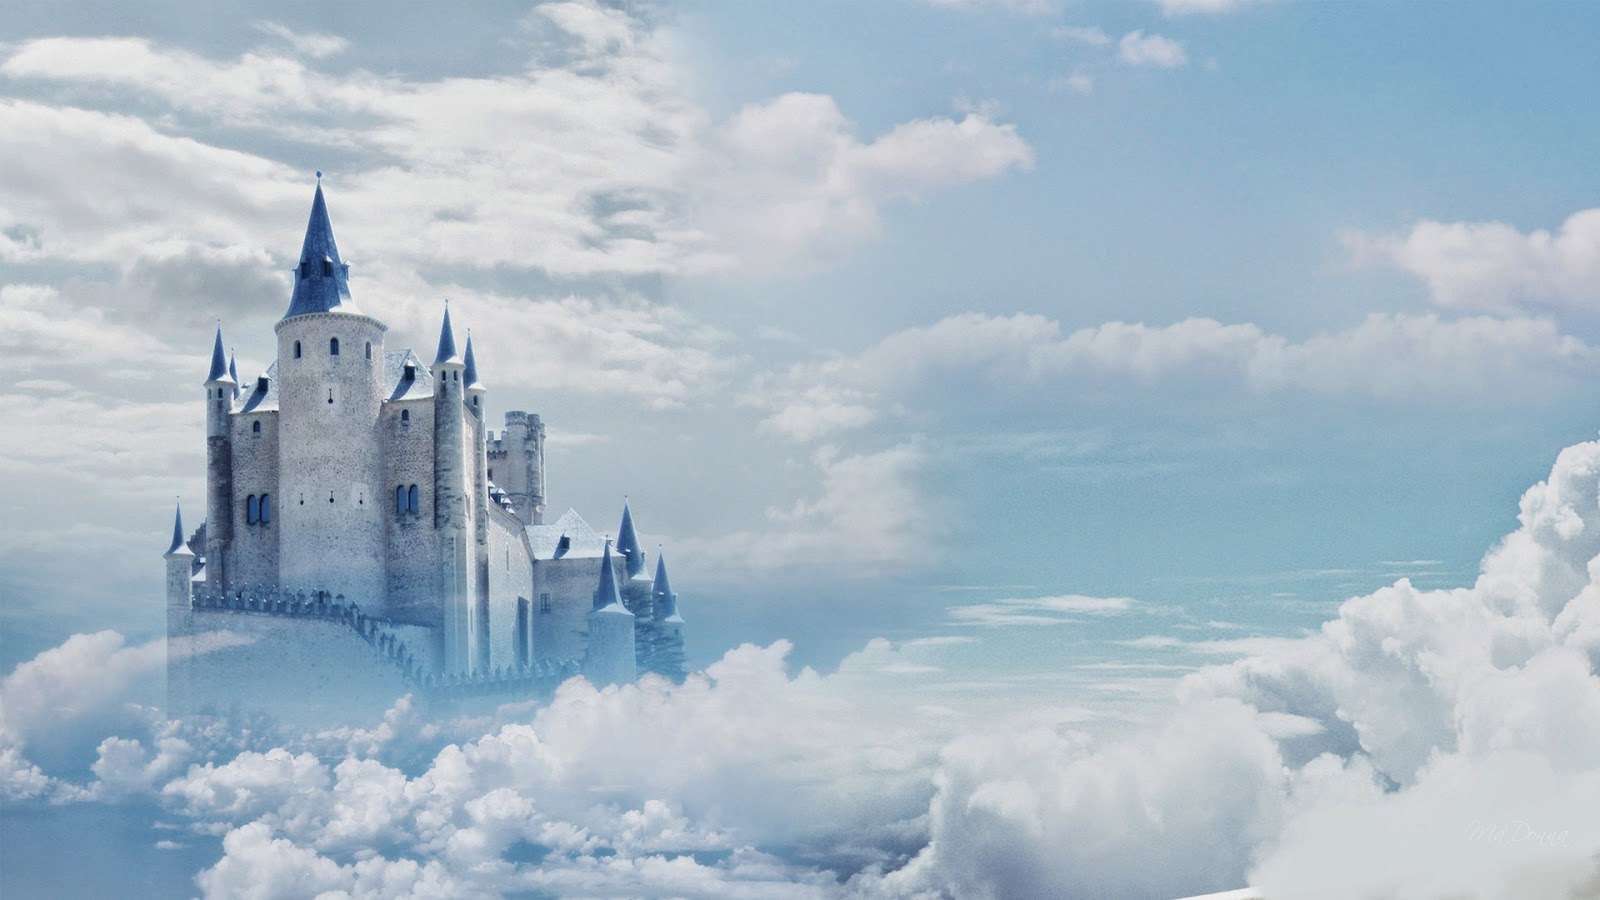 castle in the sky wallpaper,sky,landmark,cloud,world,ice